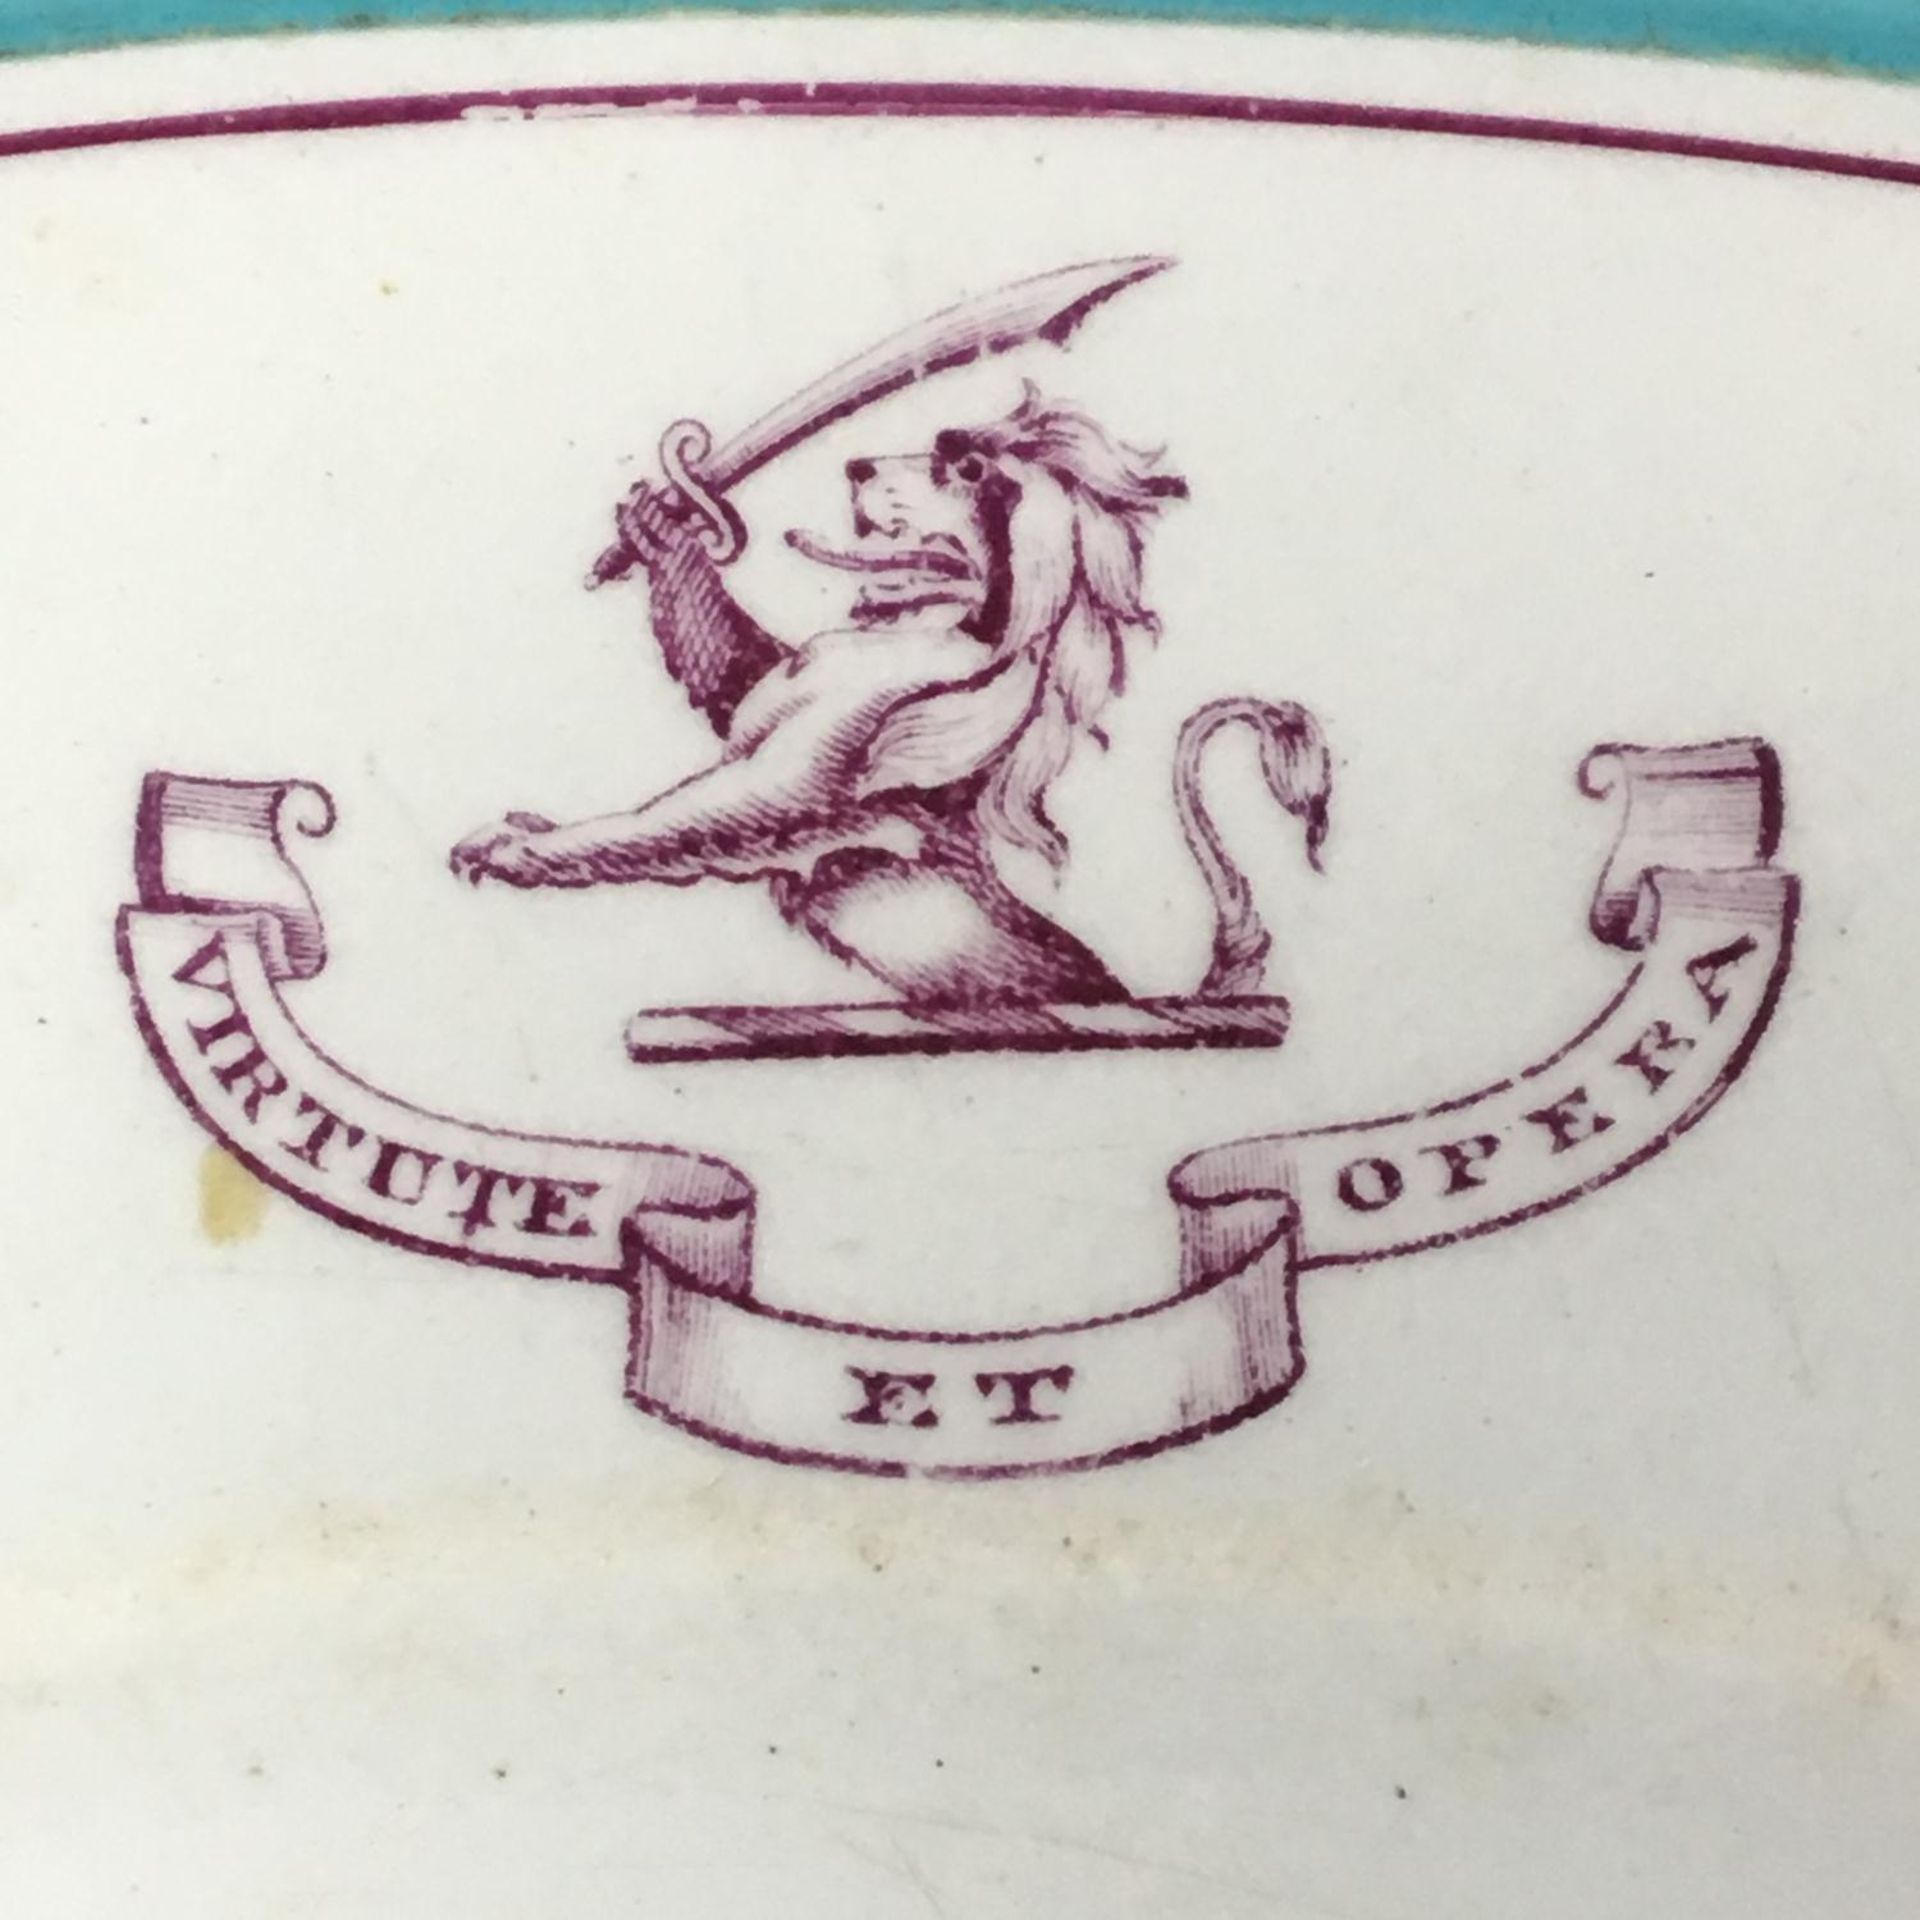 19th century heraldic plate and bowl "vertute et opera" motto of Duke of Fife - Image 3 of 4